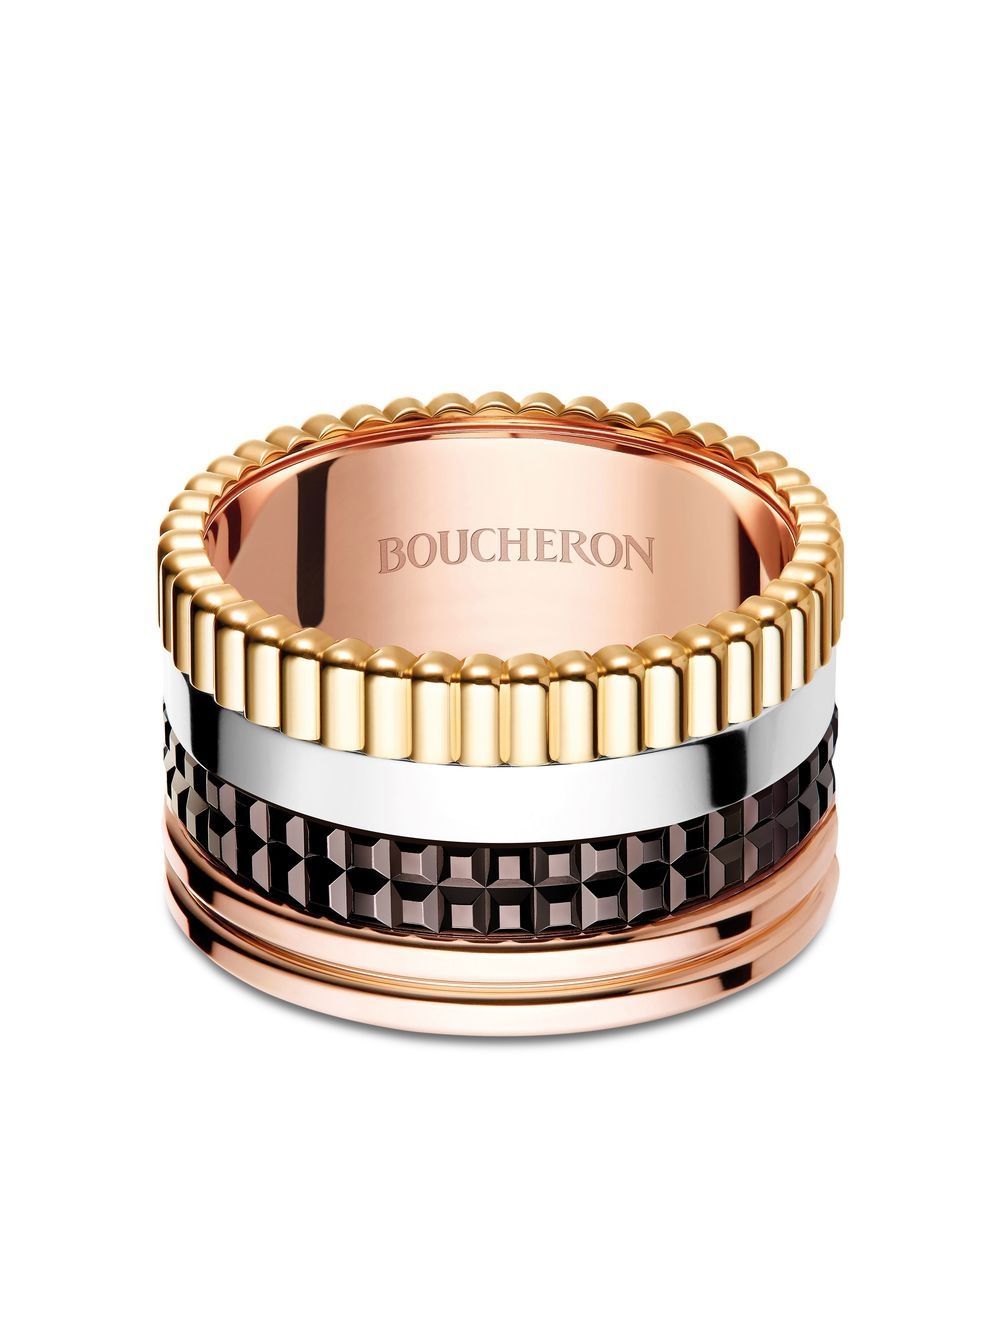 Boucheron 18kt yellow, rose, and white gold Quatre Classique Large ring von Boucheron